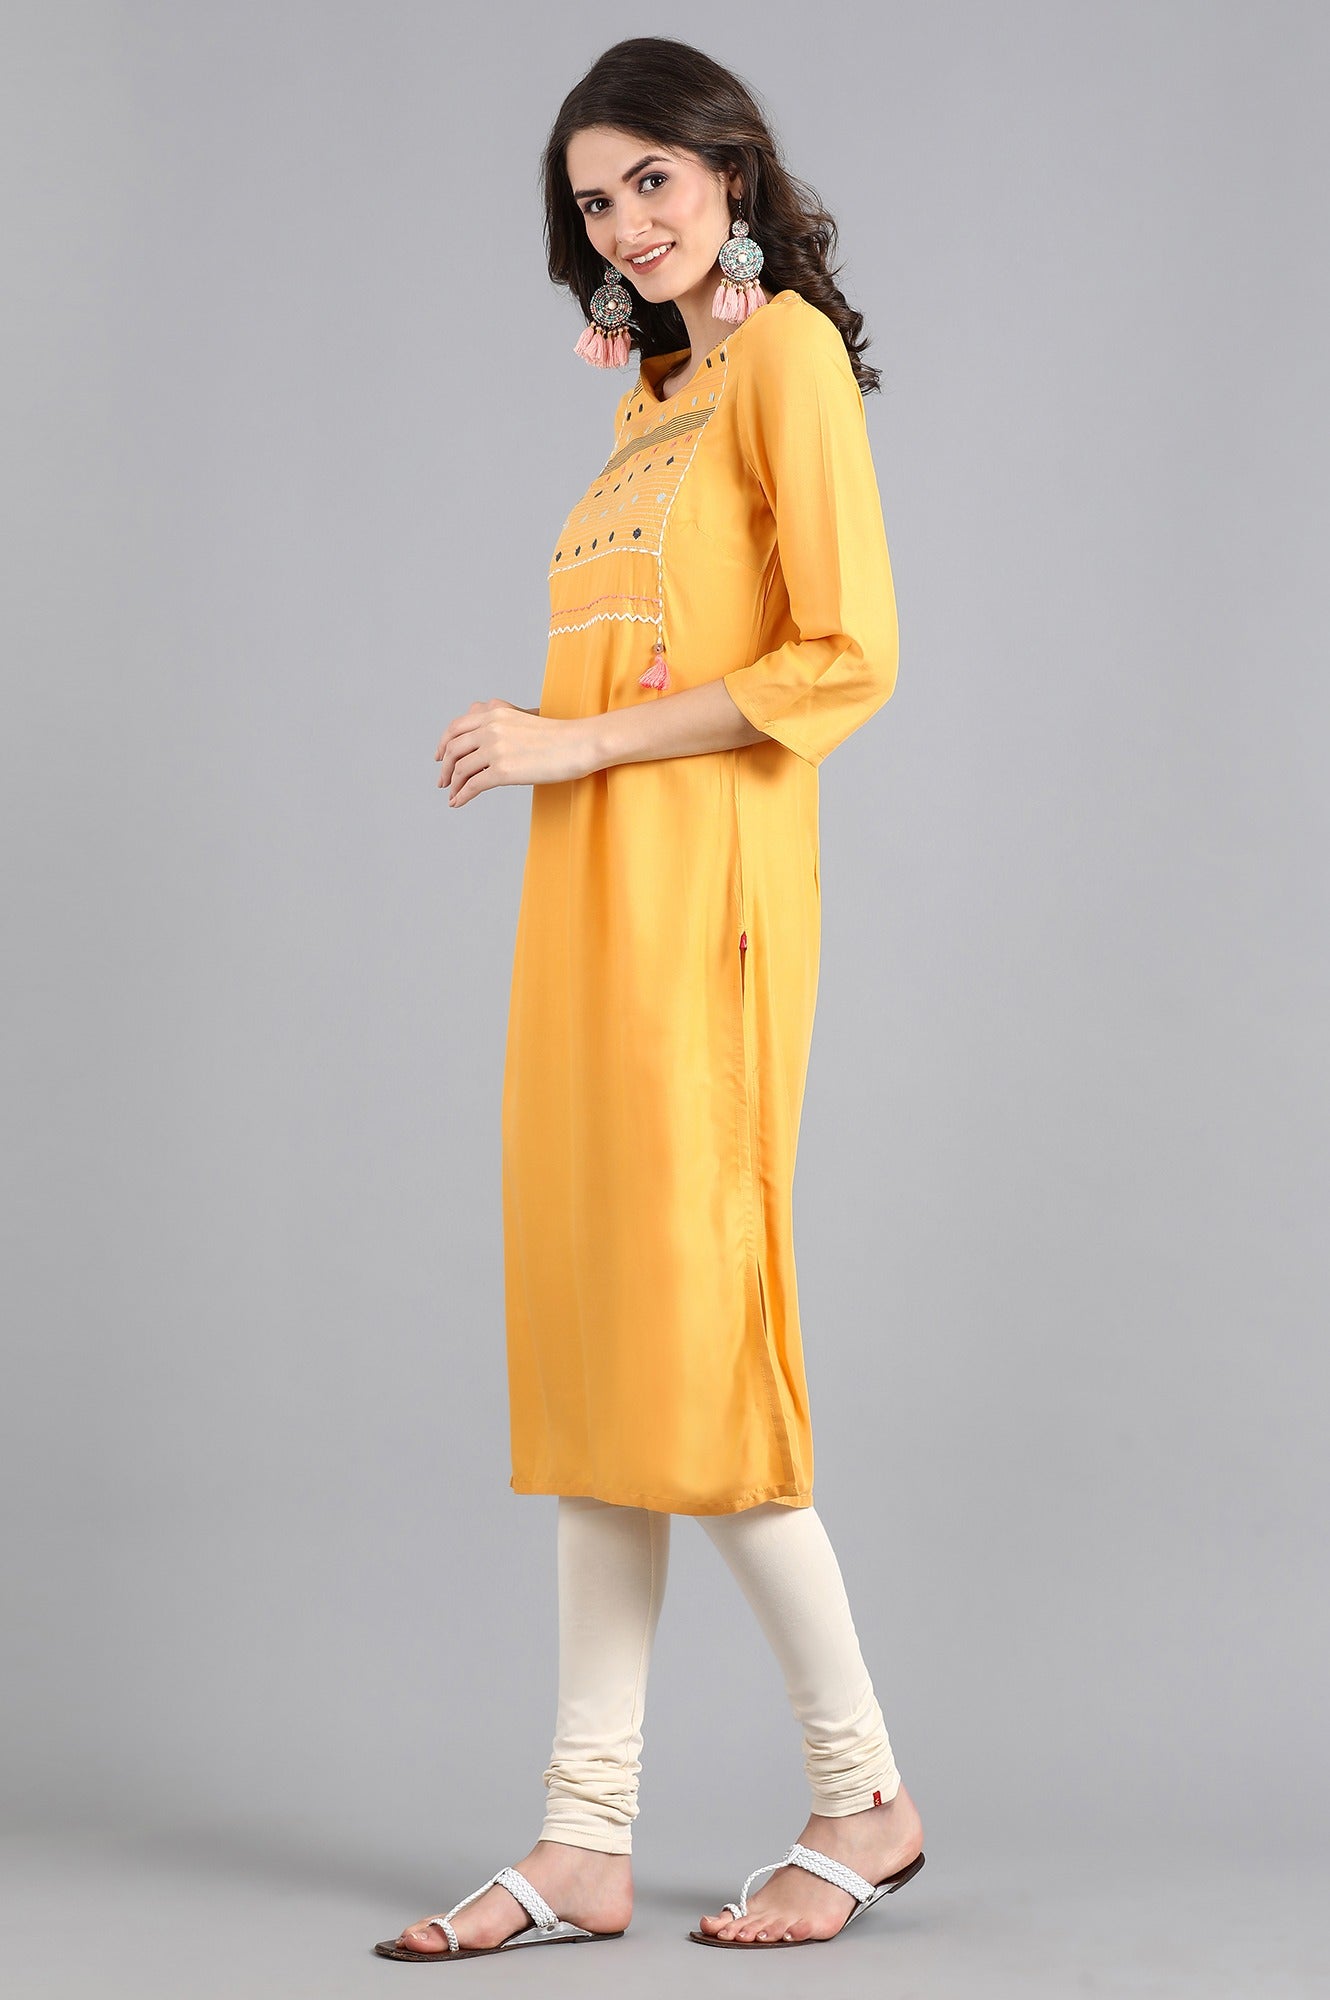 Yellow Round Neck Embroidered kurta